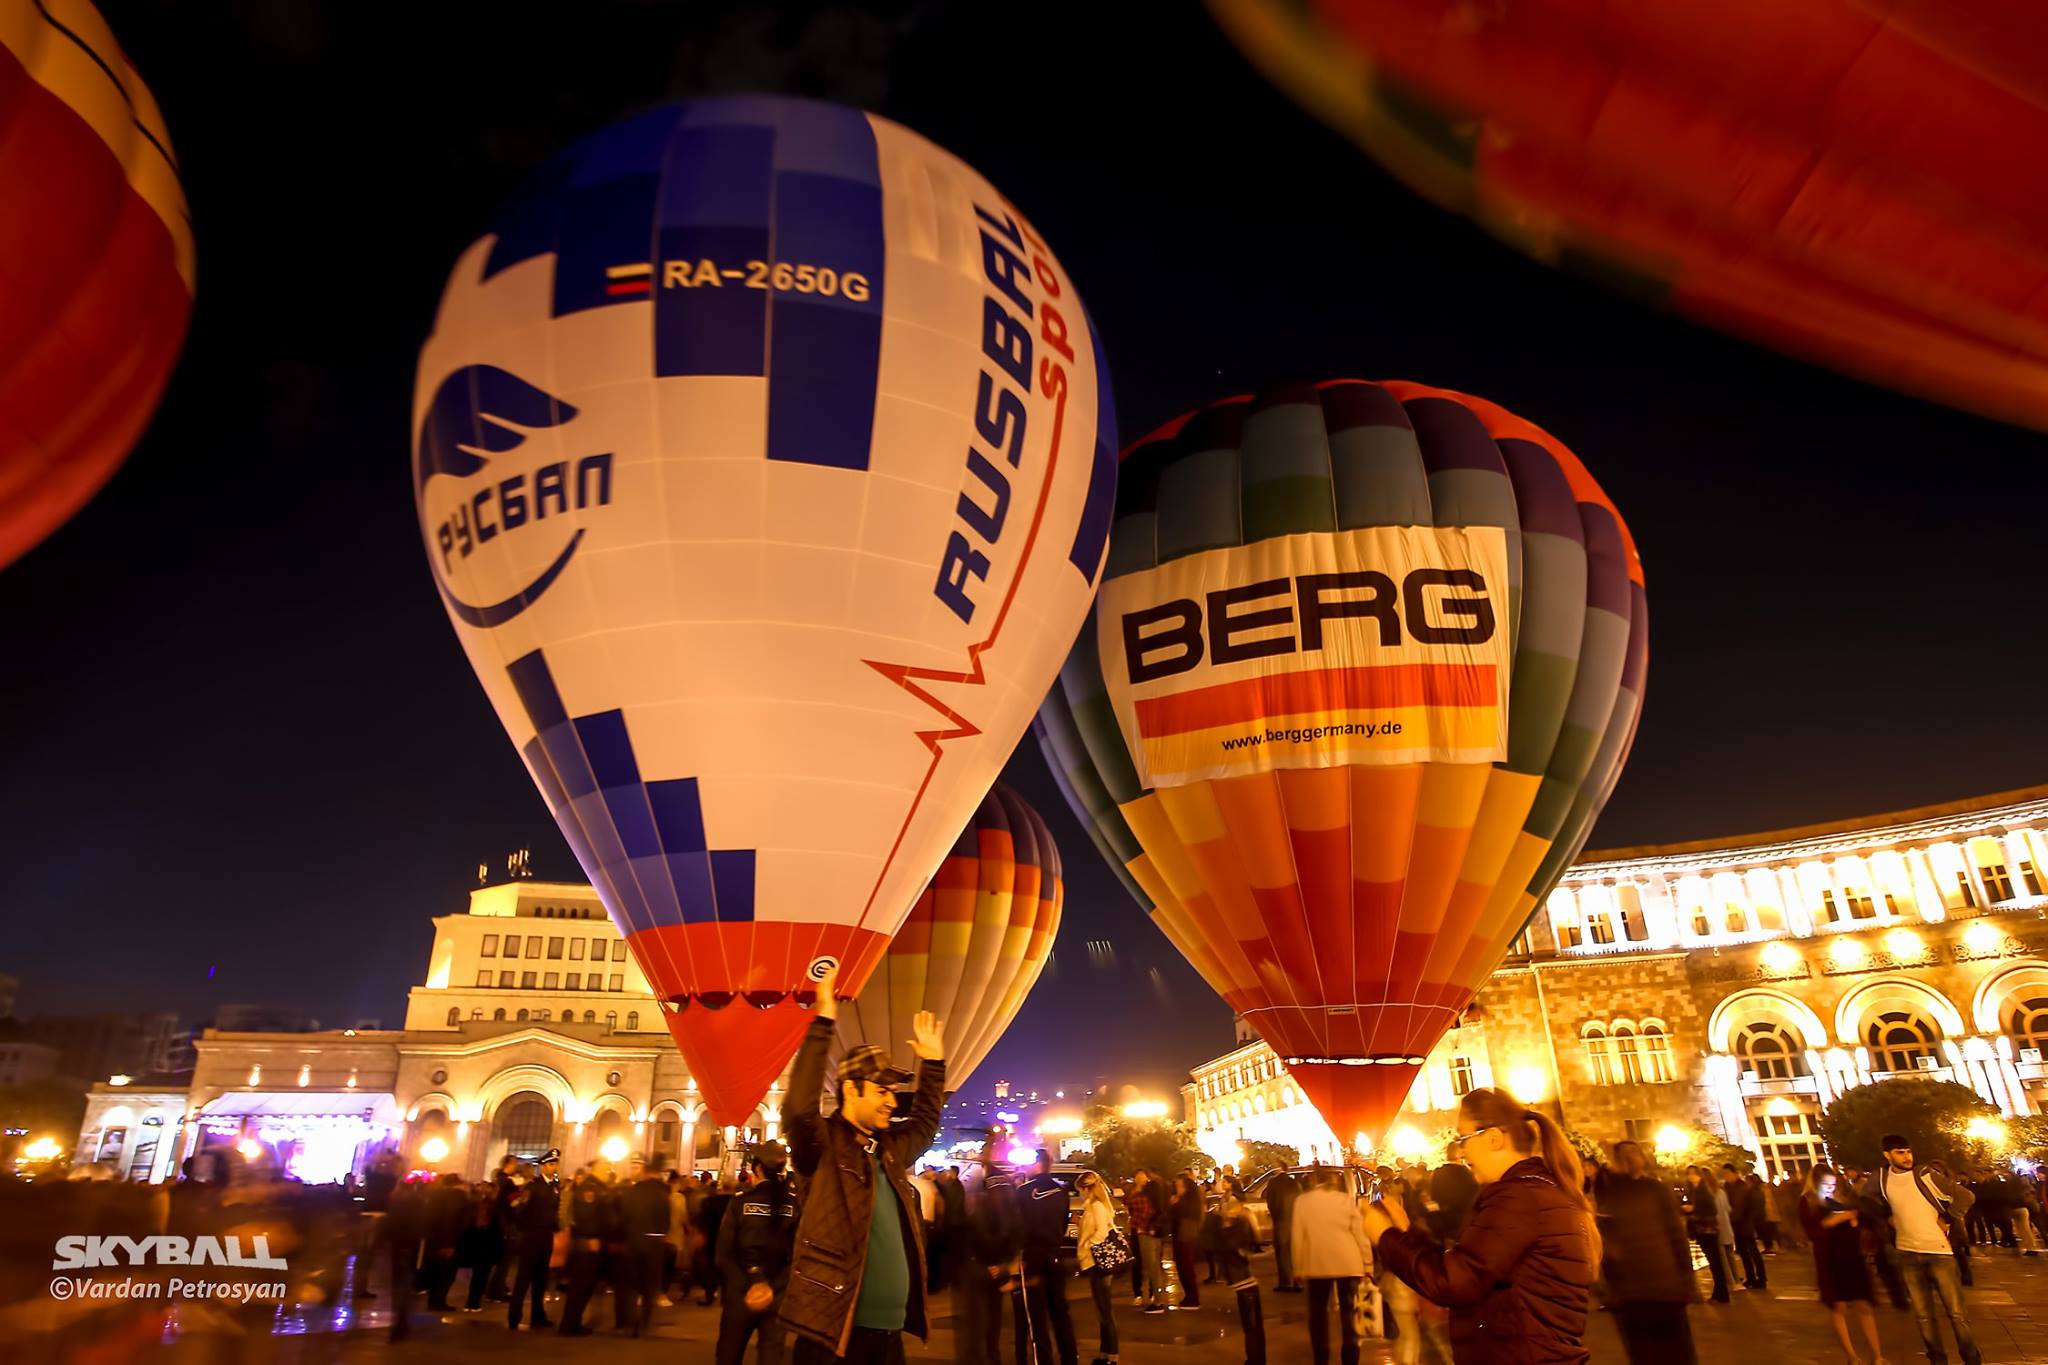 International ballooning festival in Armenia